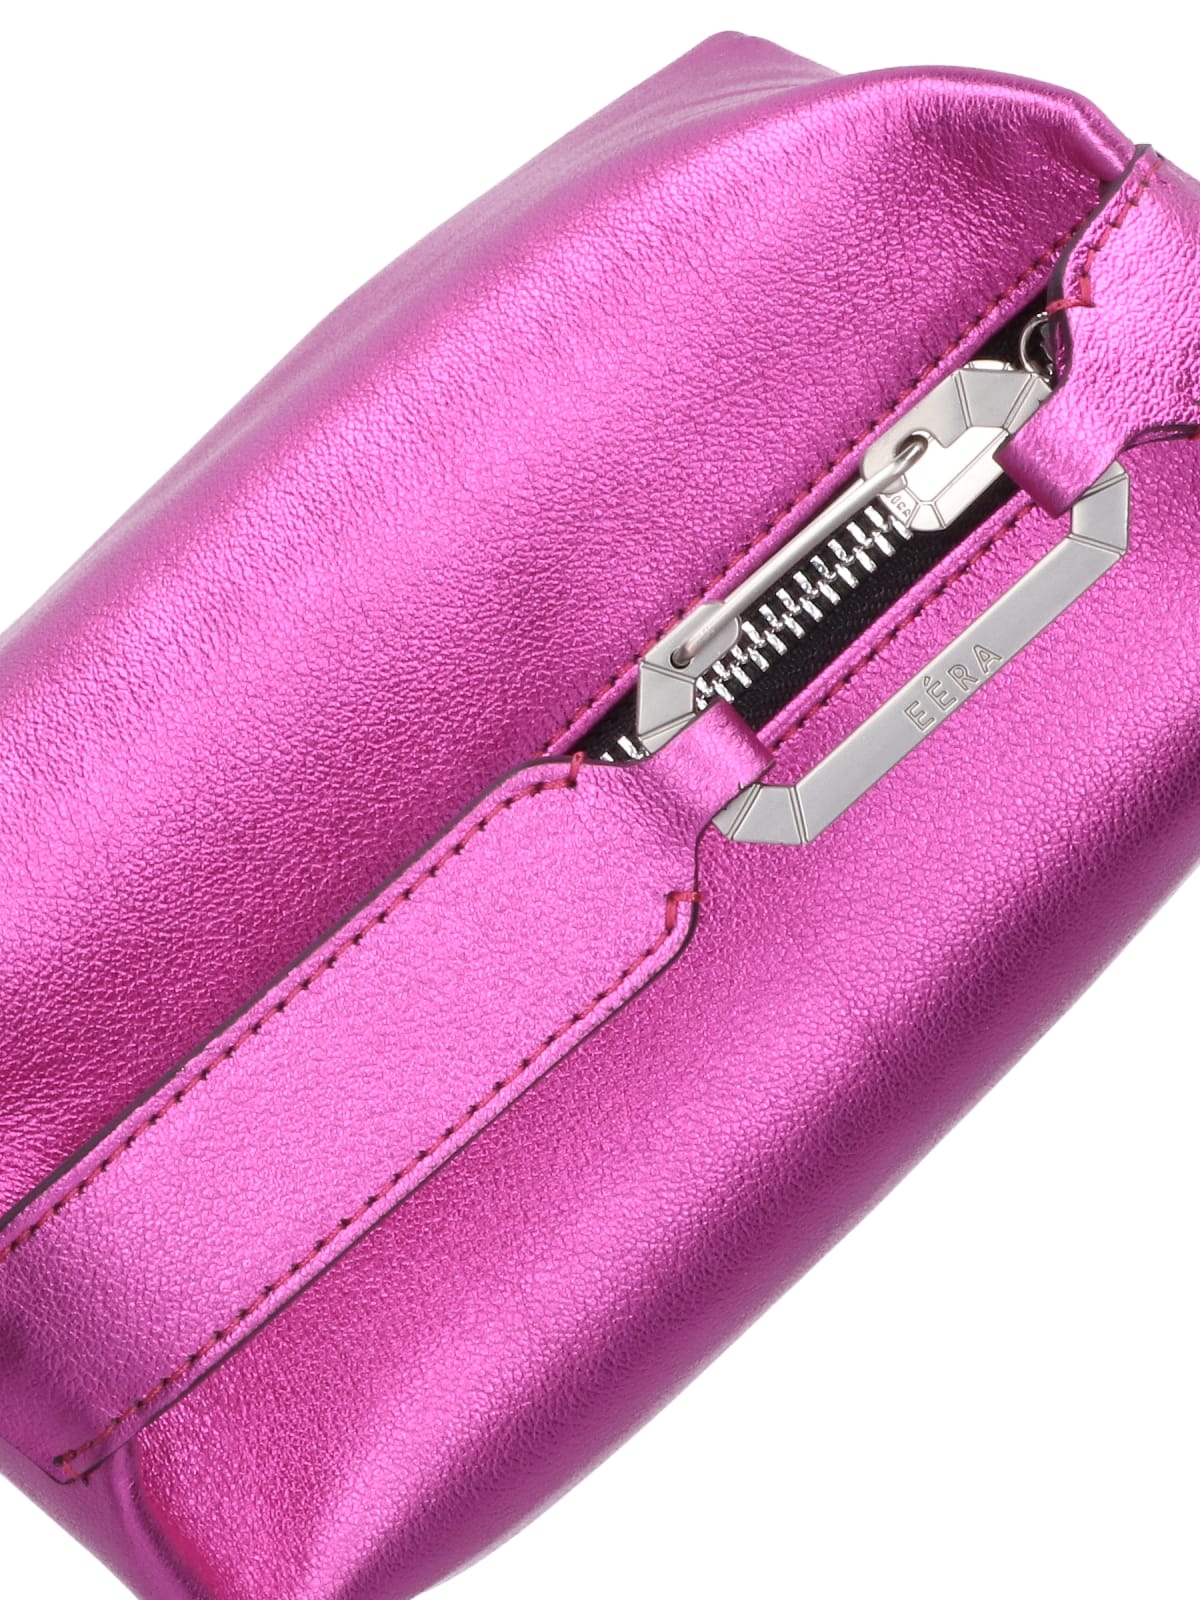 Shop Eéra Moon Handbag In Purple